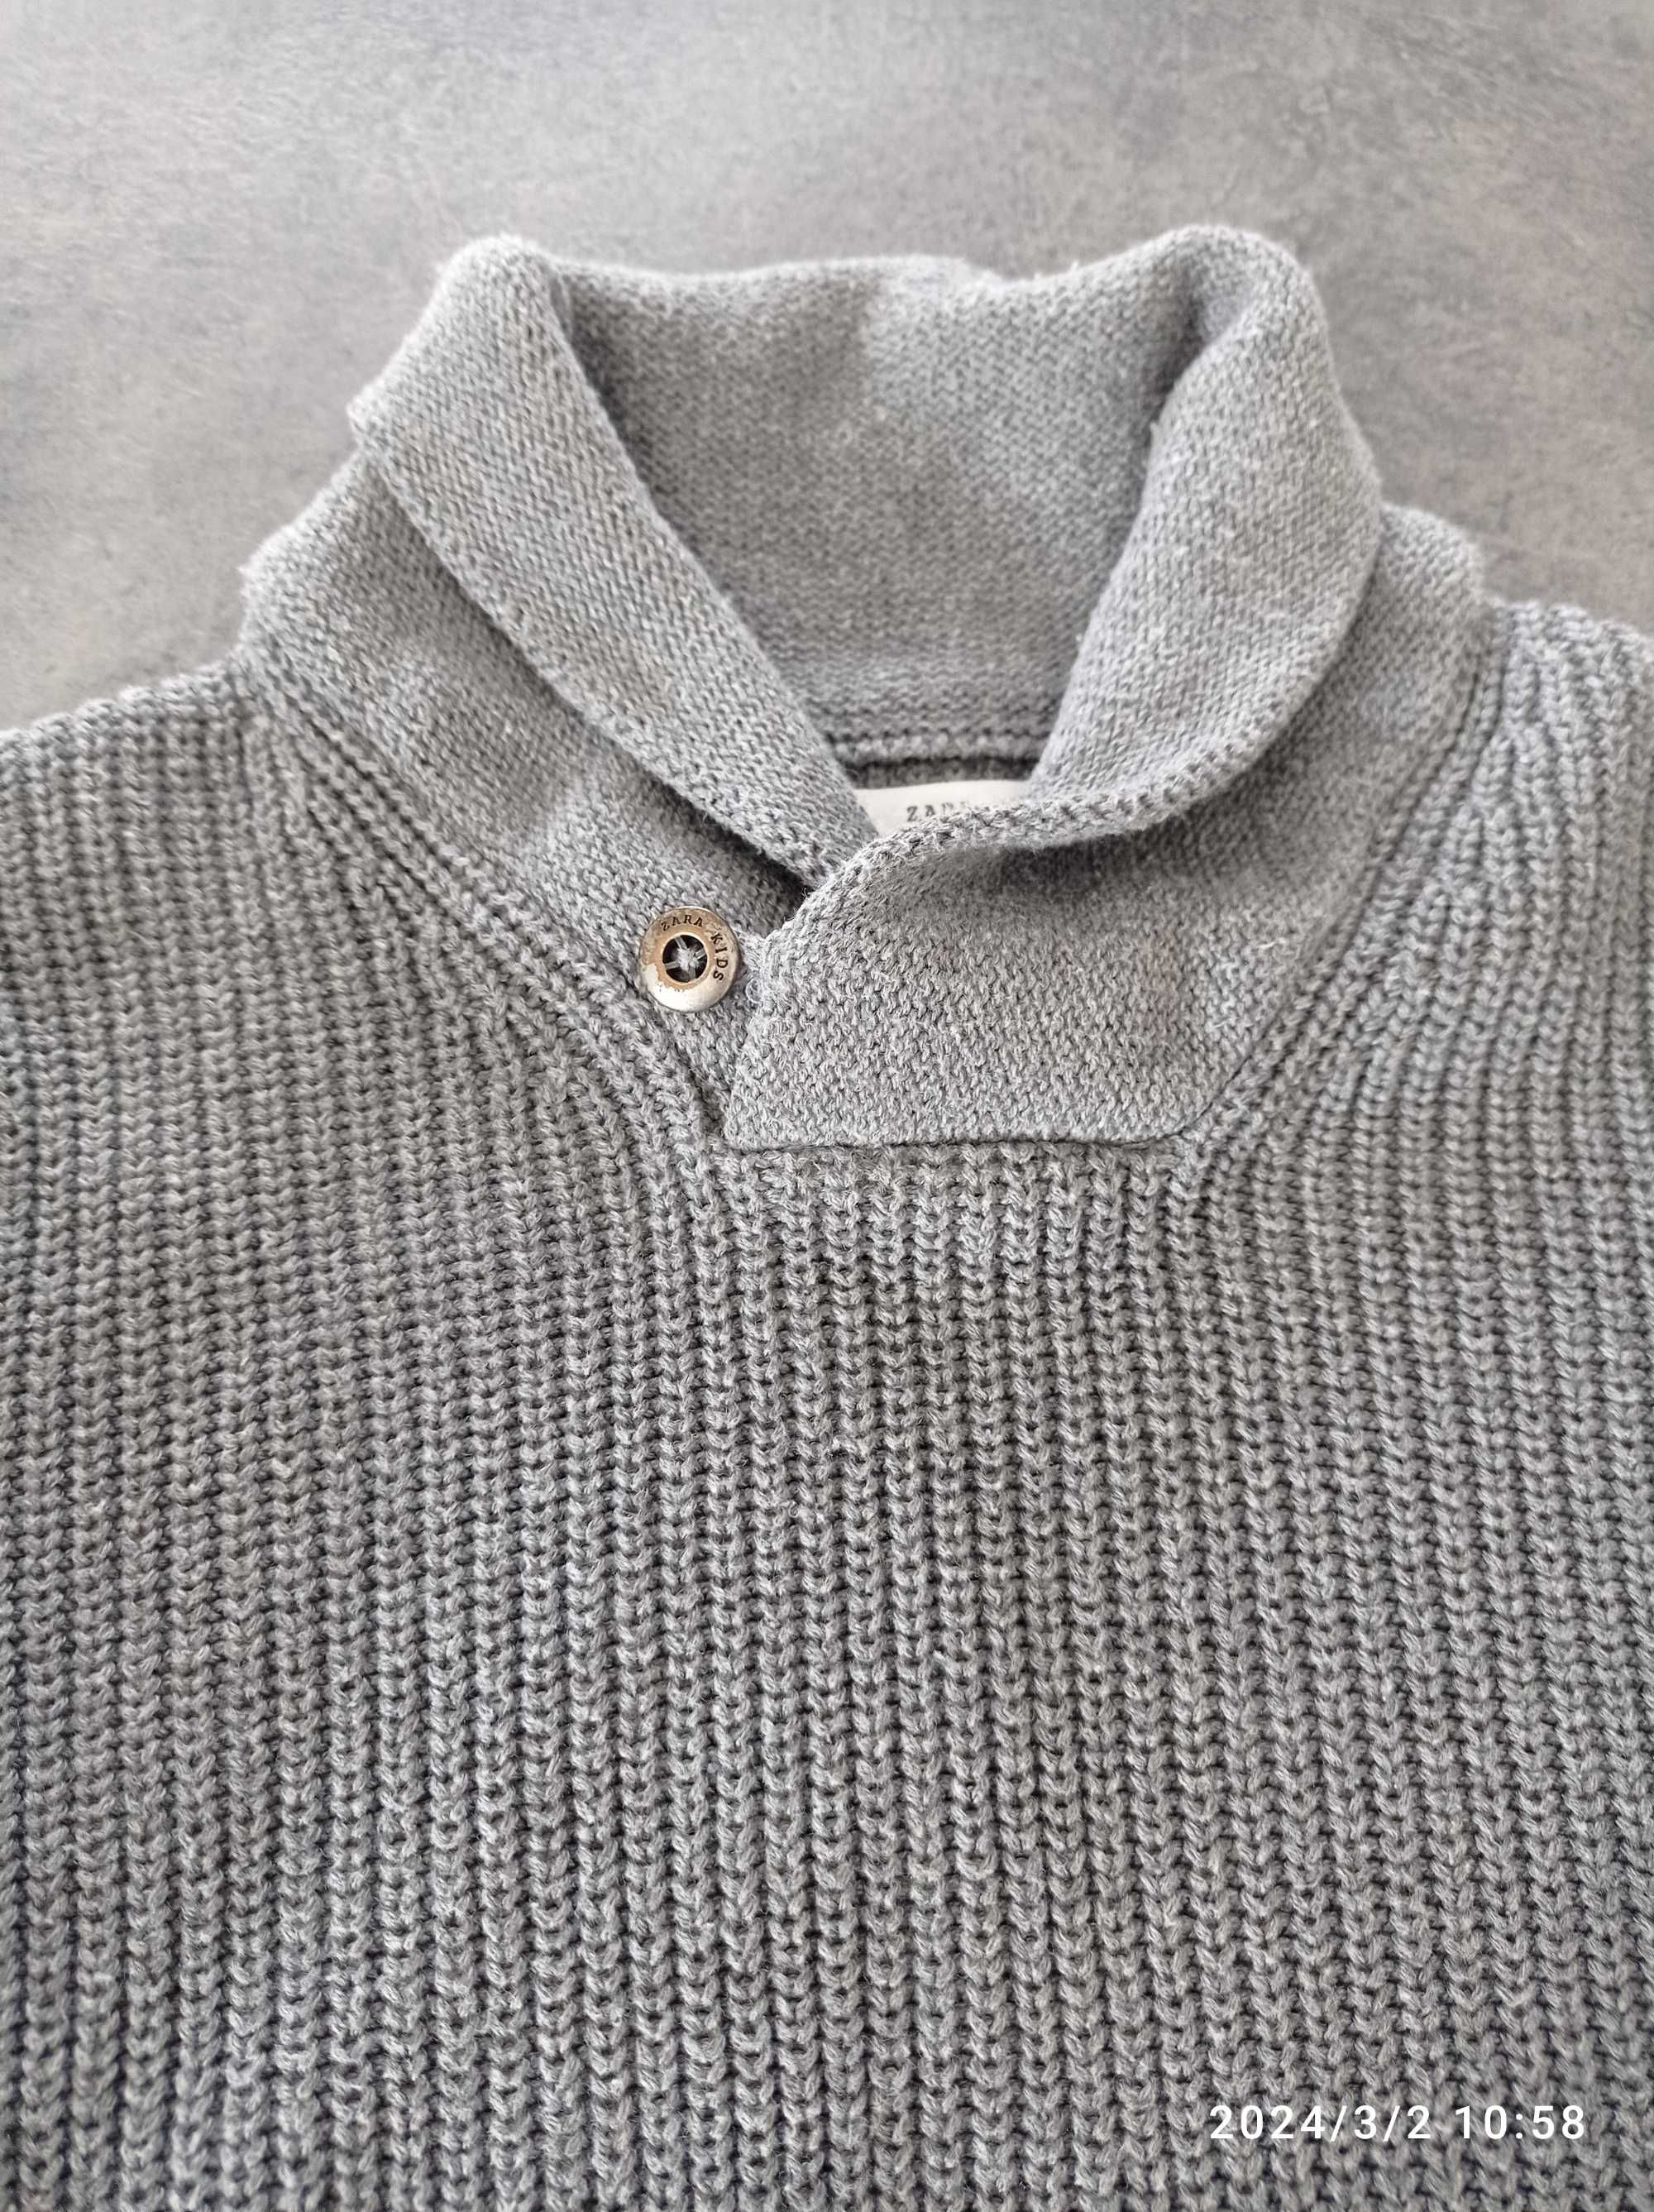 Sweterek Zara rozmiar 116